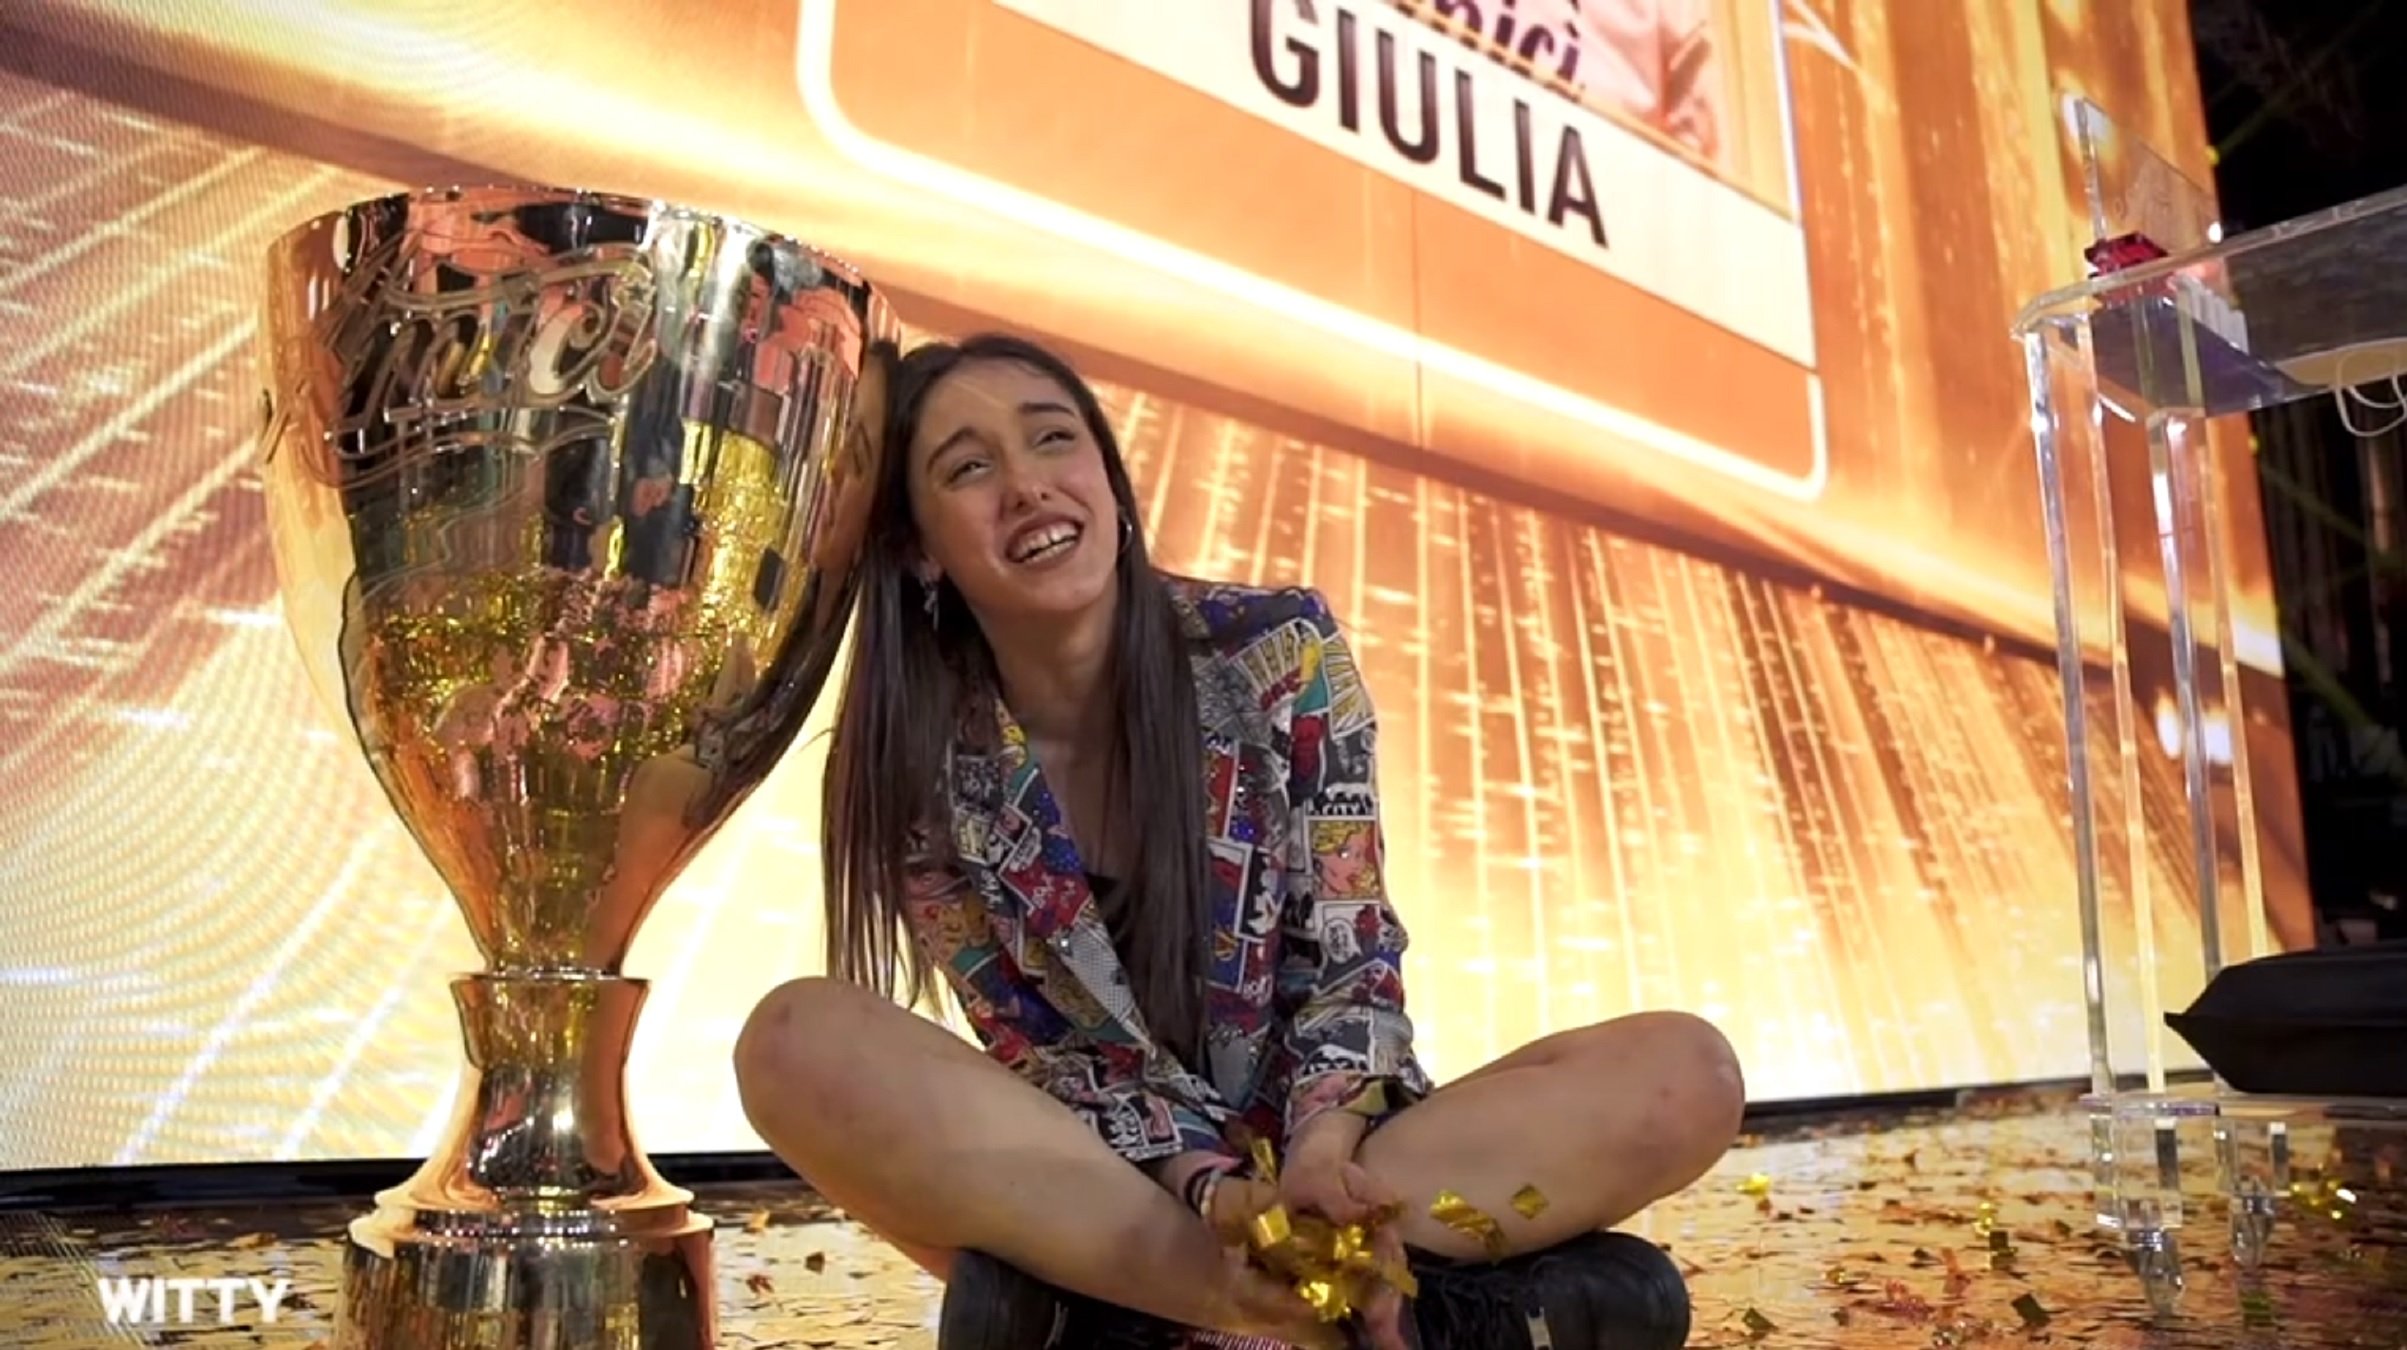 Giulia Stabile, la catalana indepe que ha guanyat OT a Itàlia amb un llaç groc